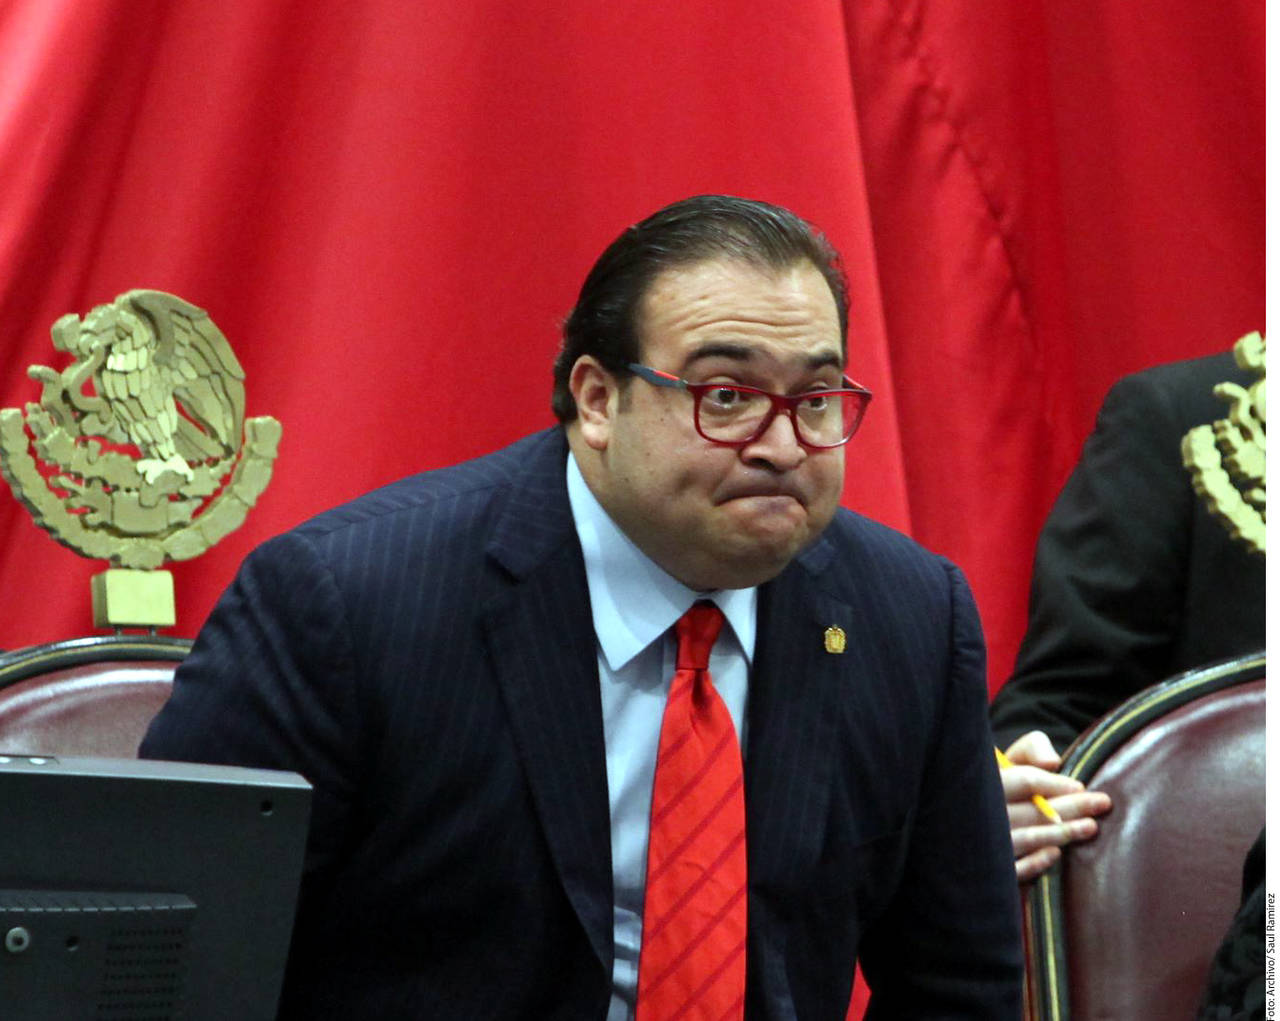 Plazo. El juez definirá si le concede a Javier Duarte una ampliación del plazo de investigación en su contra. (AGENCIA REFORMA)